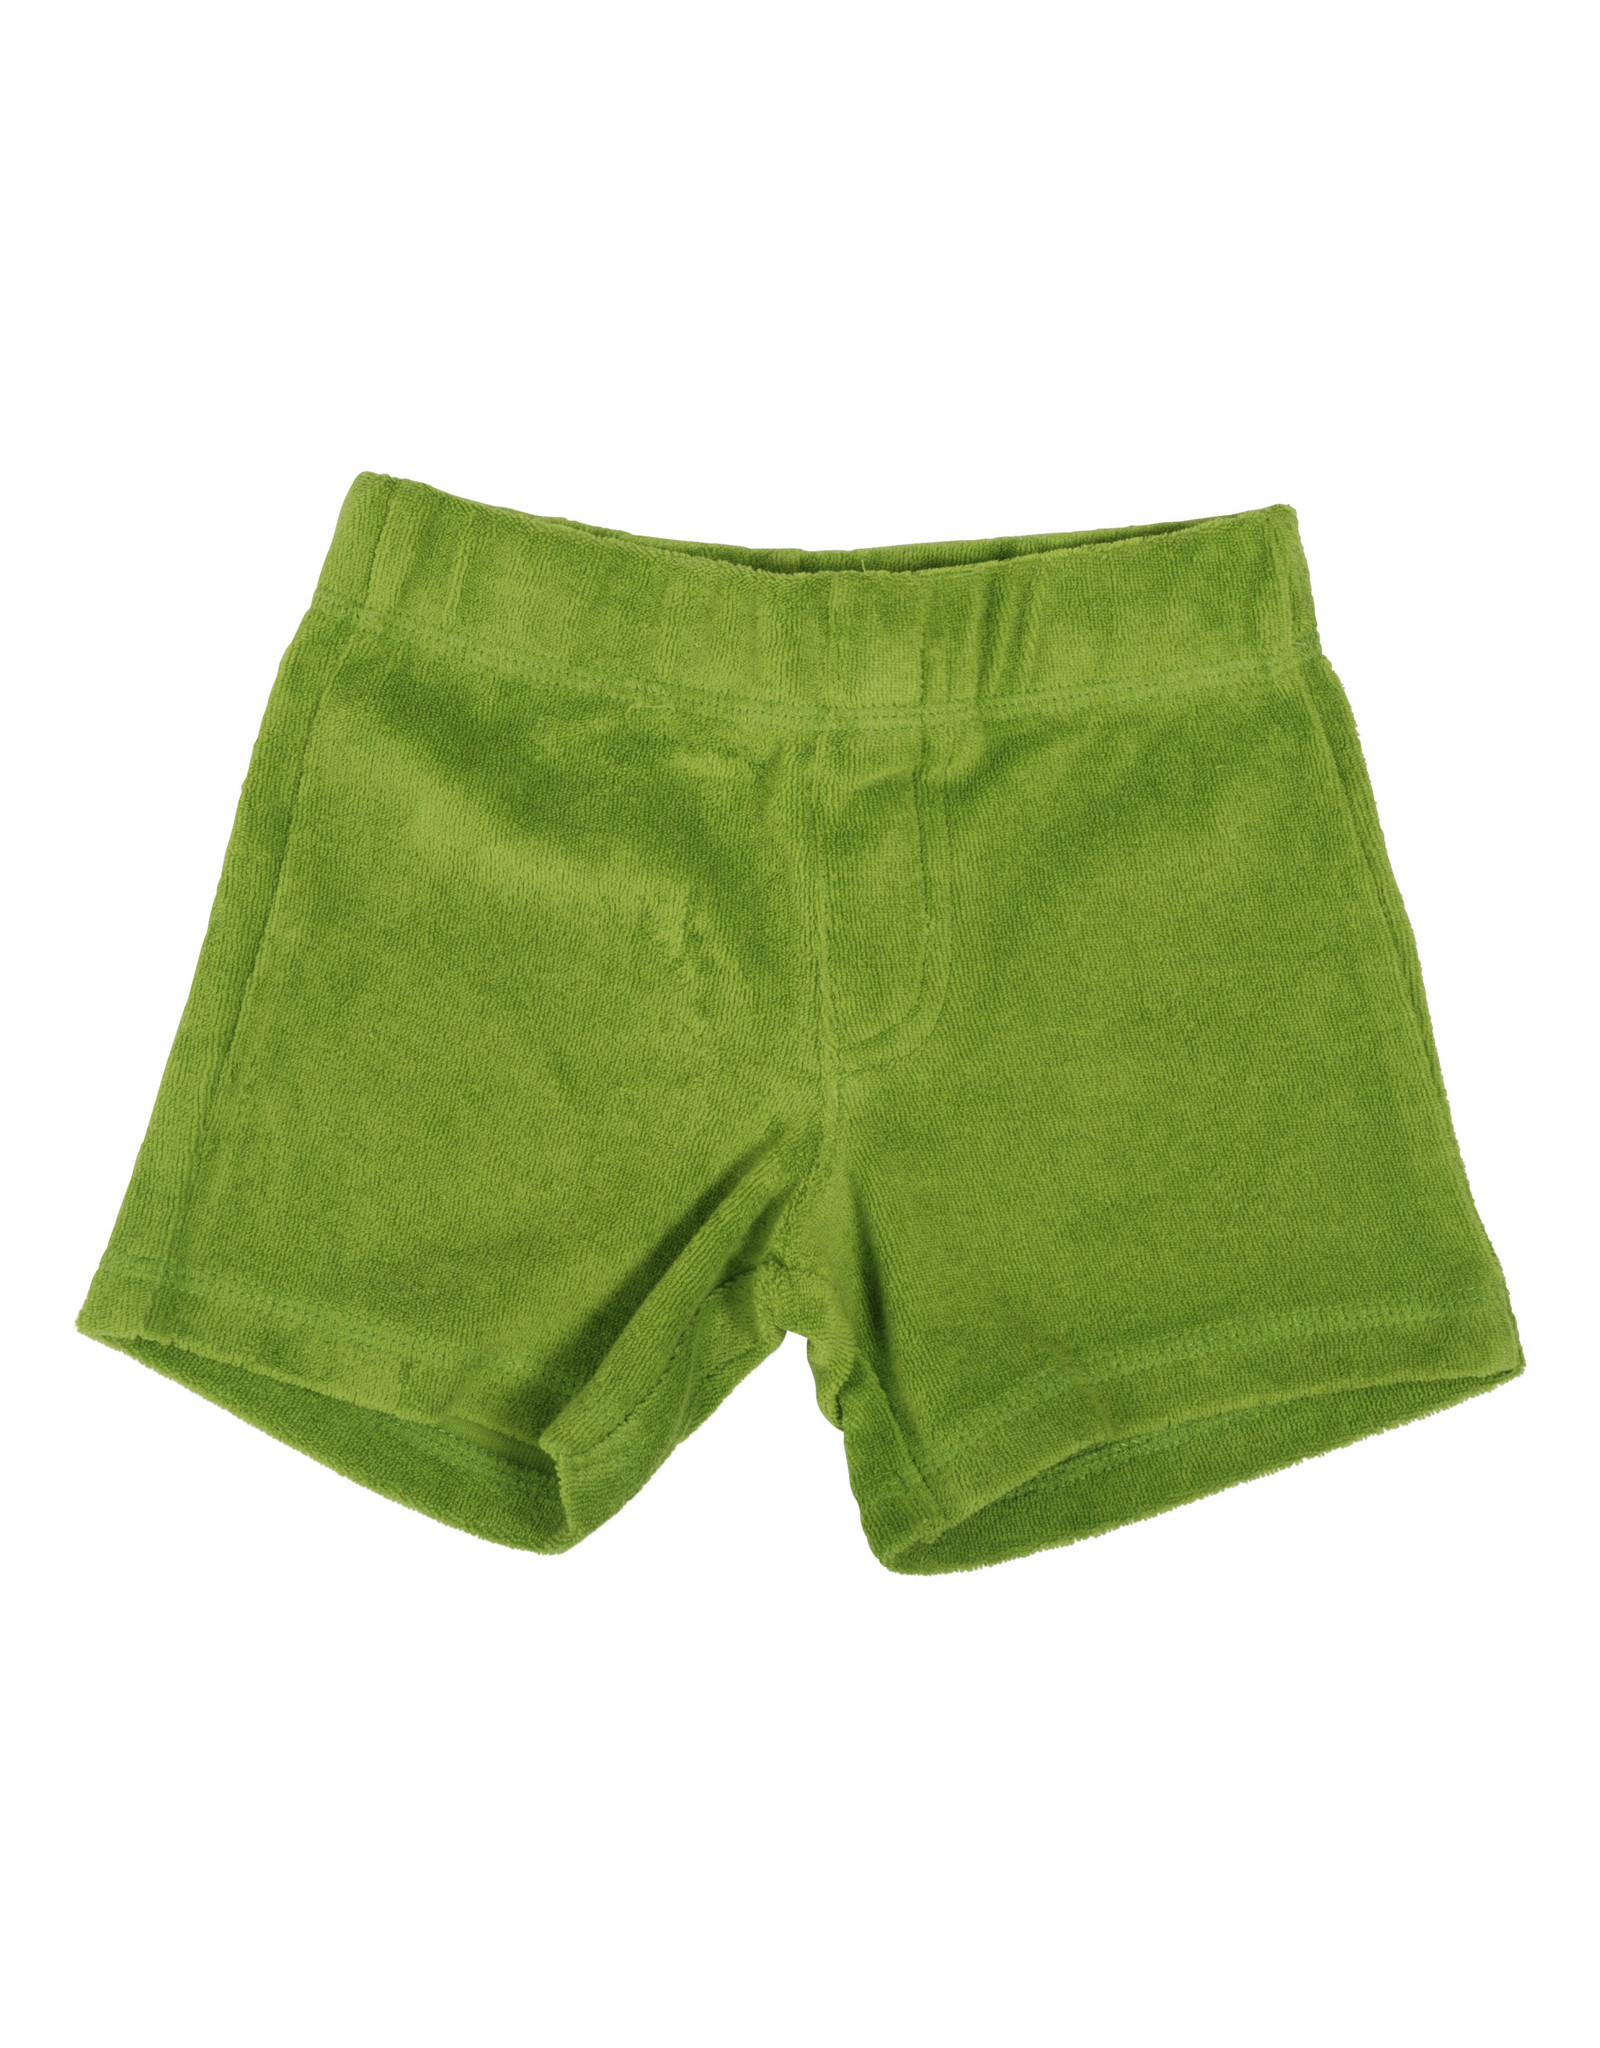 Duns Sponsen groene short